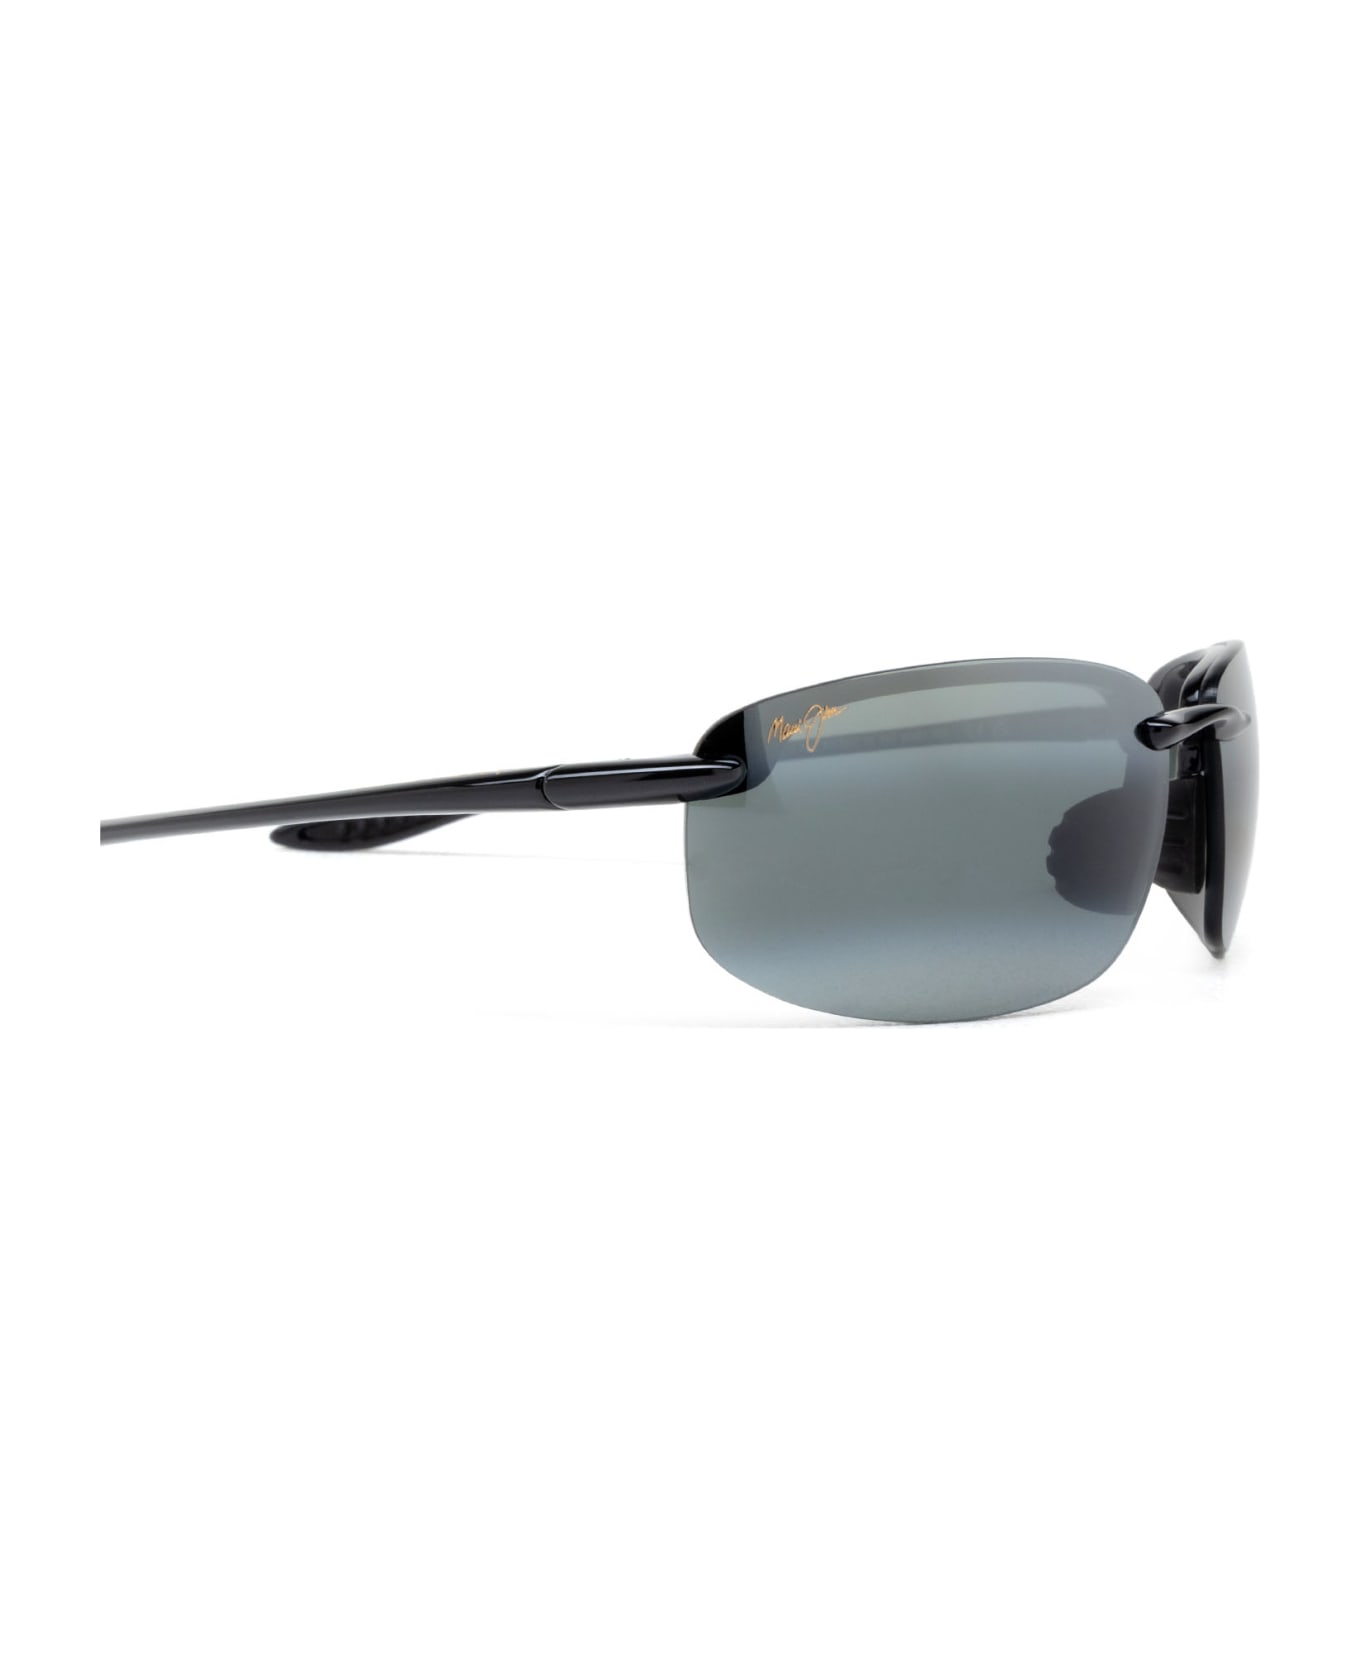 Maui Jim Mj0407s Black Sunglasses - Black